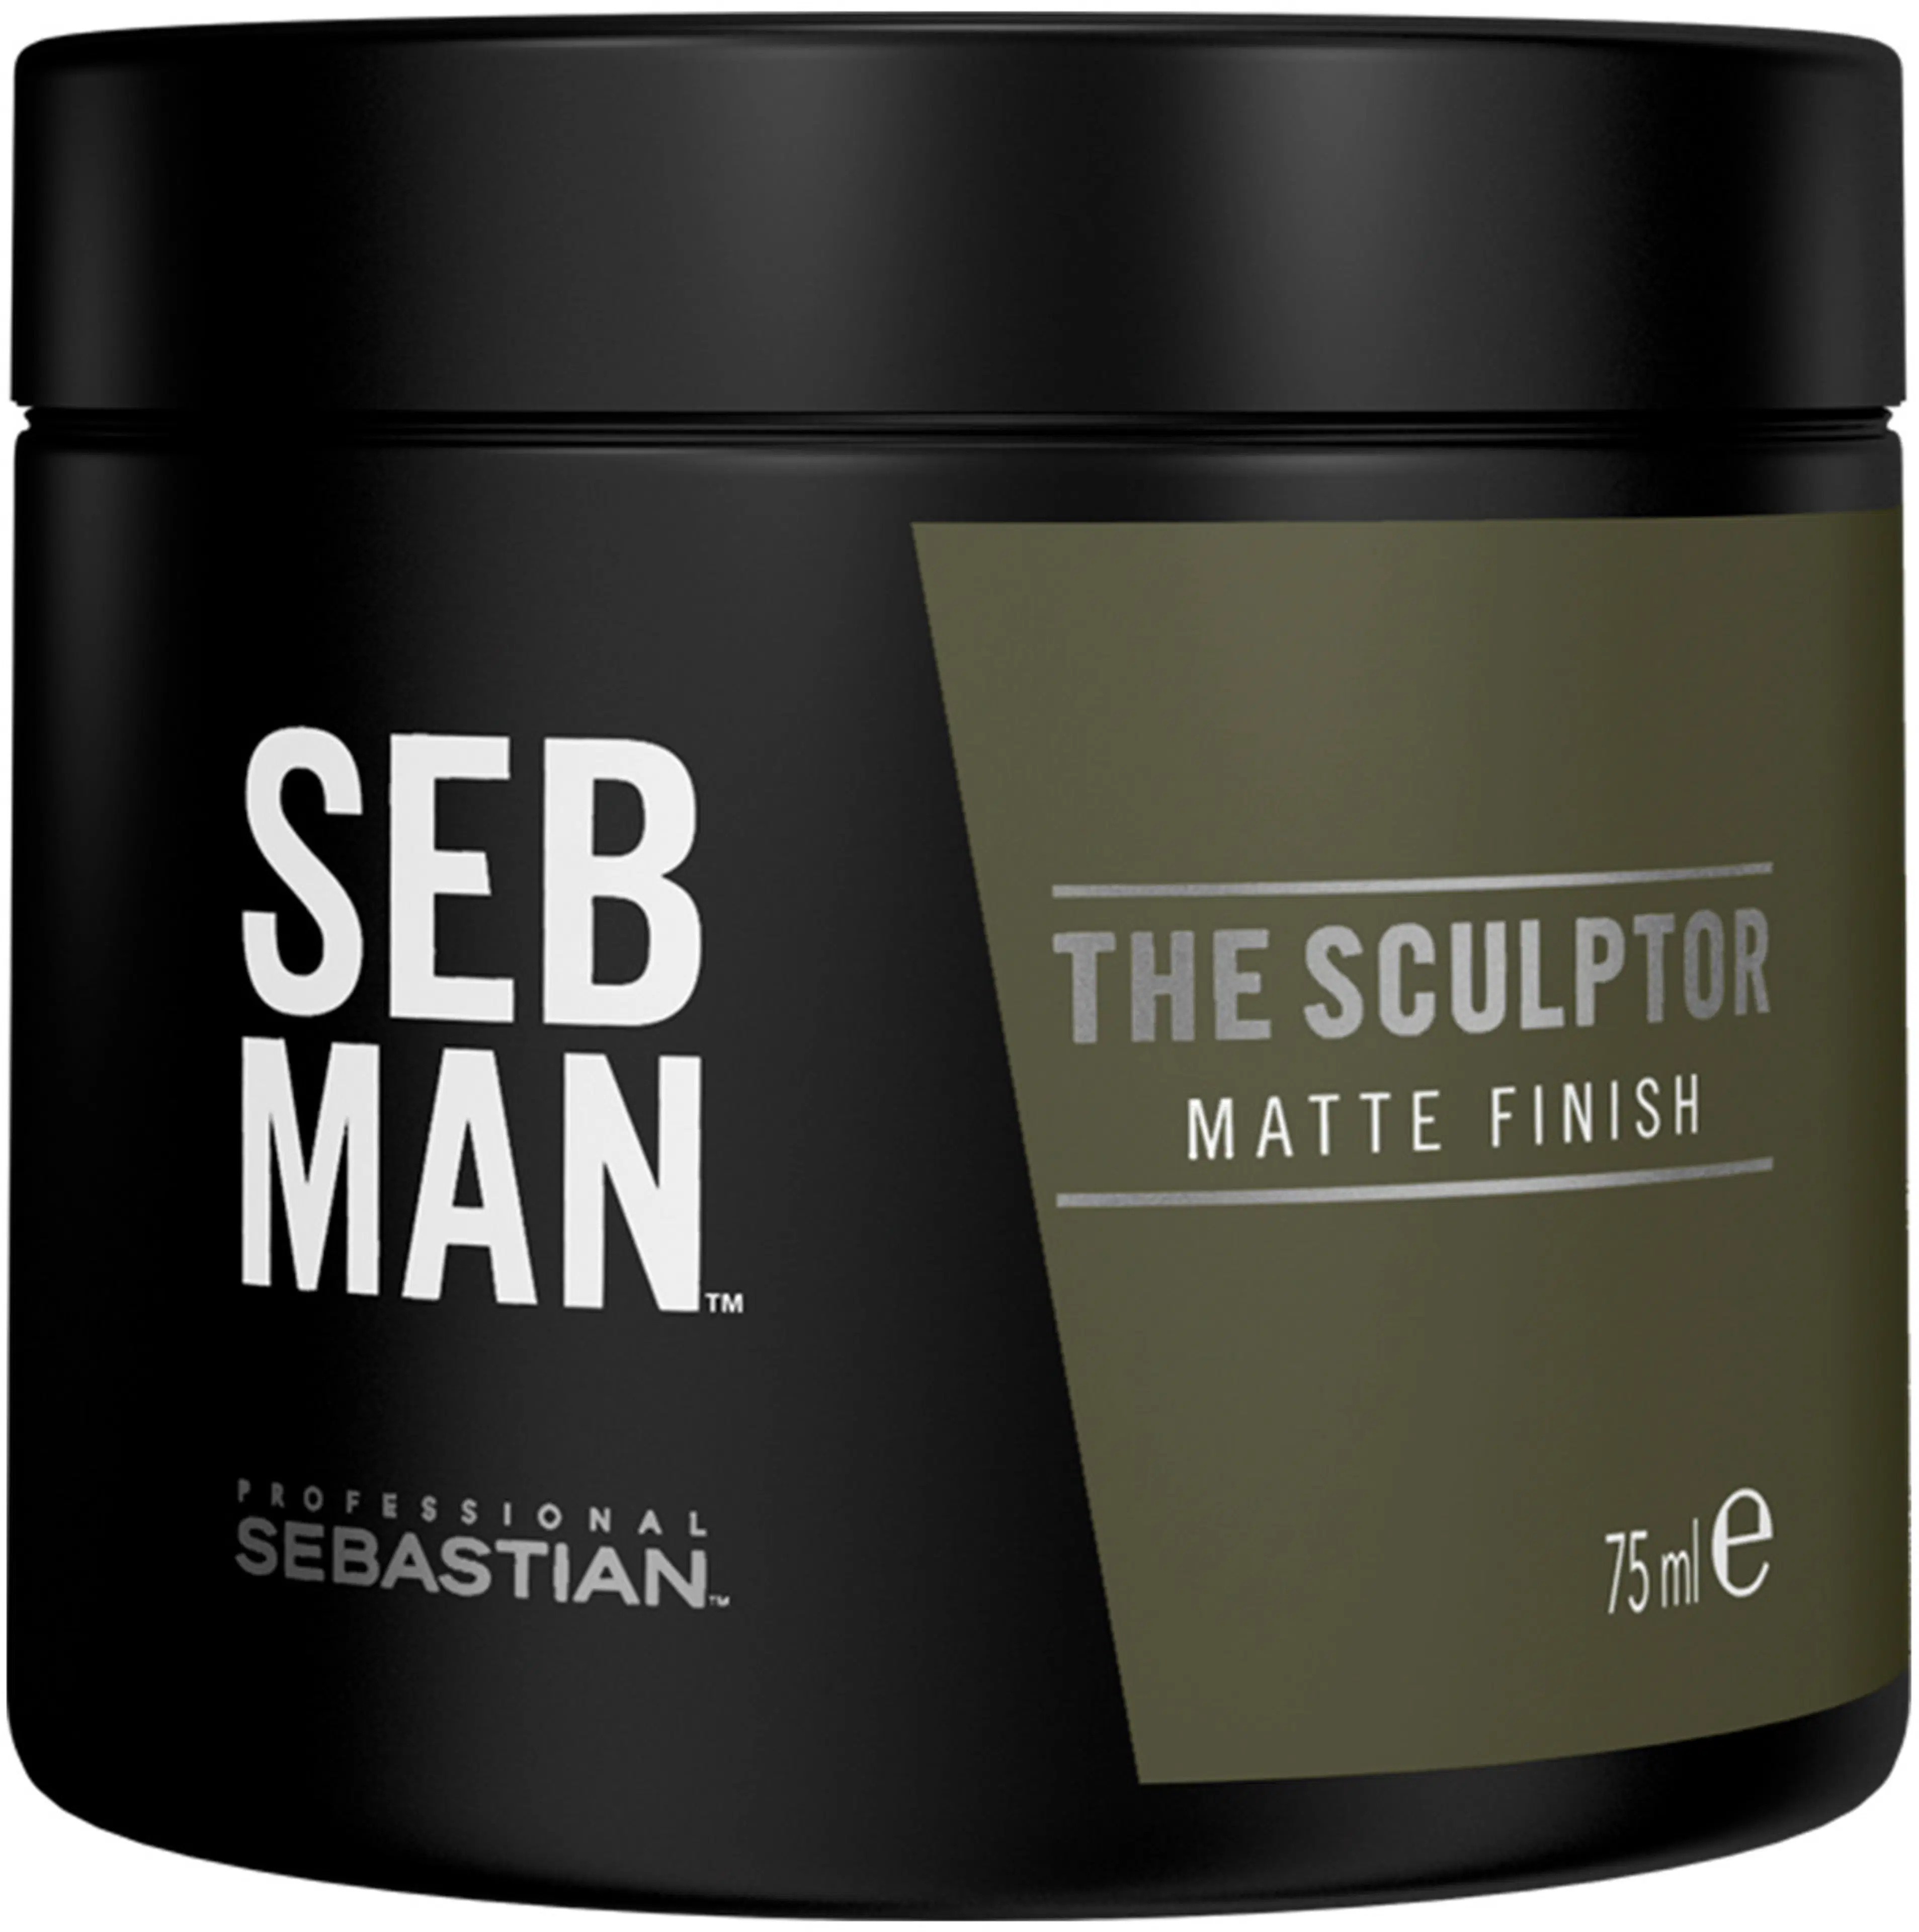 SEB MAN The Sculptor Clay 75ml